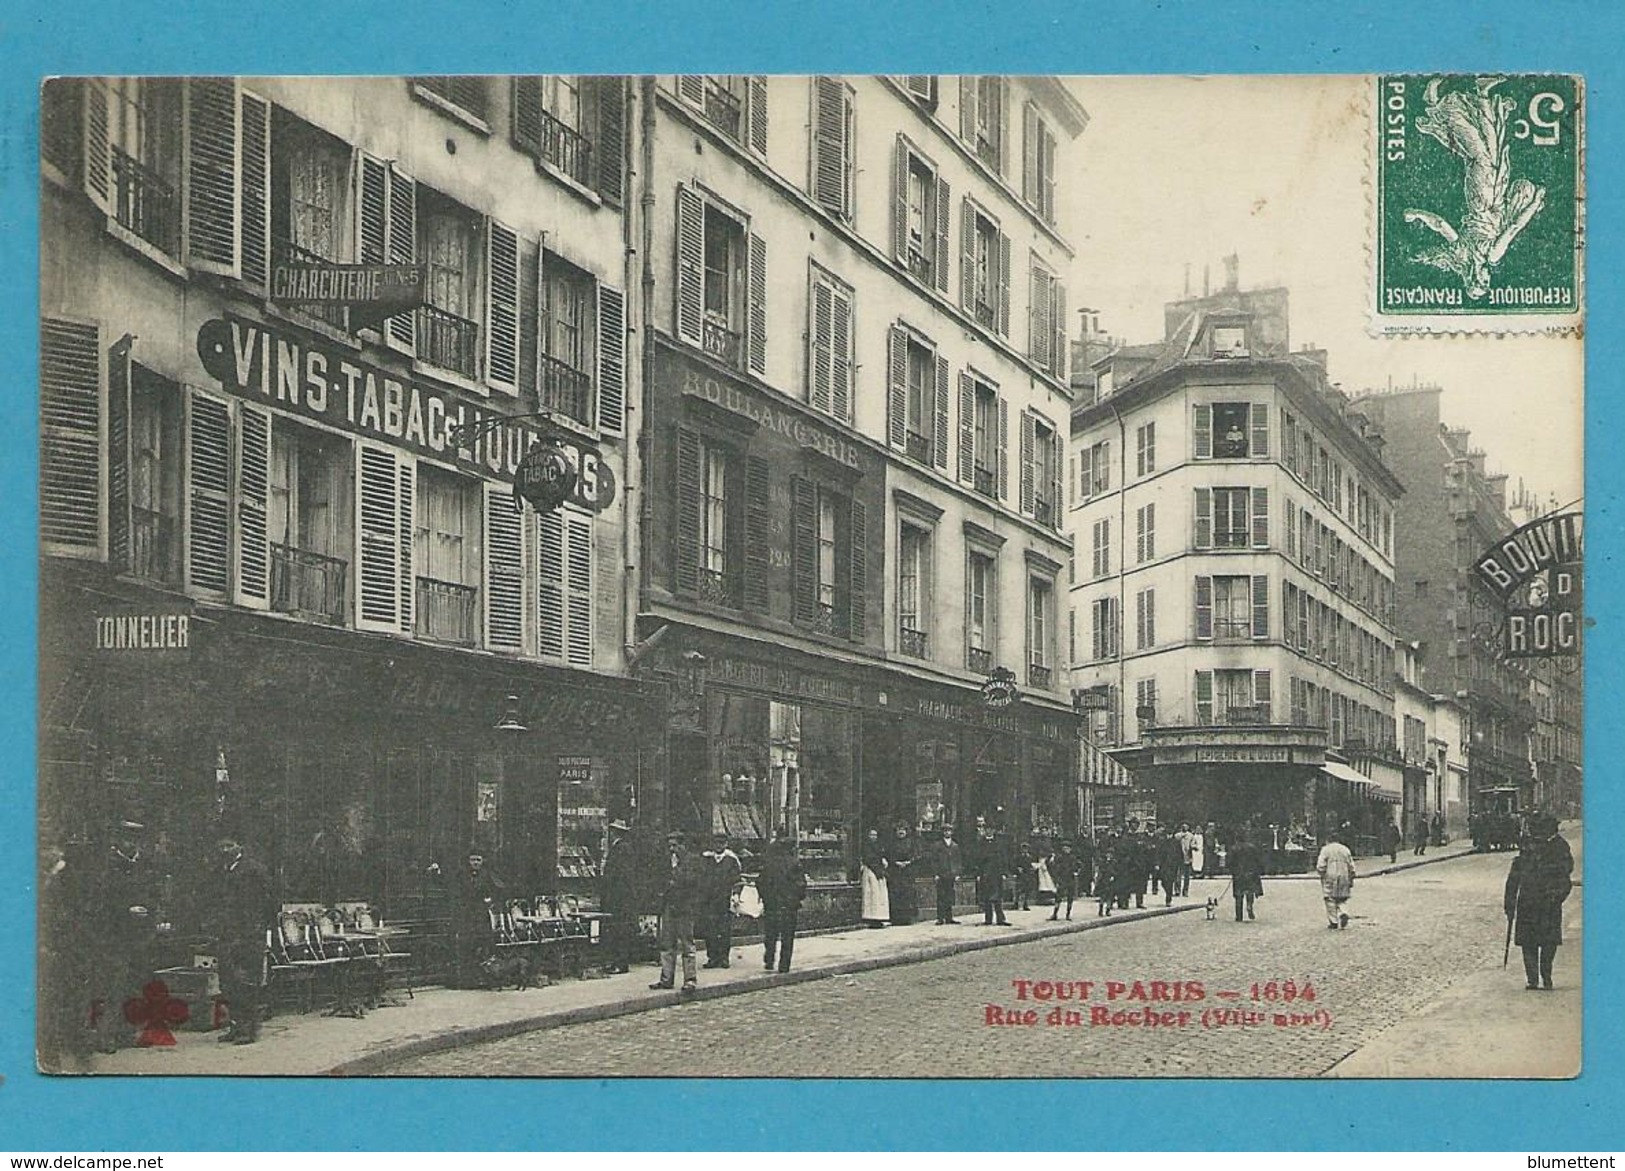 CPA TOUT PARIS 1694 - Rue Du Rocher (VIIIème Arrt.) Ed. FLEURY - Distrito: 08